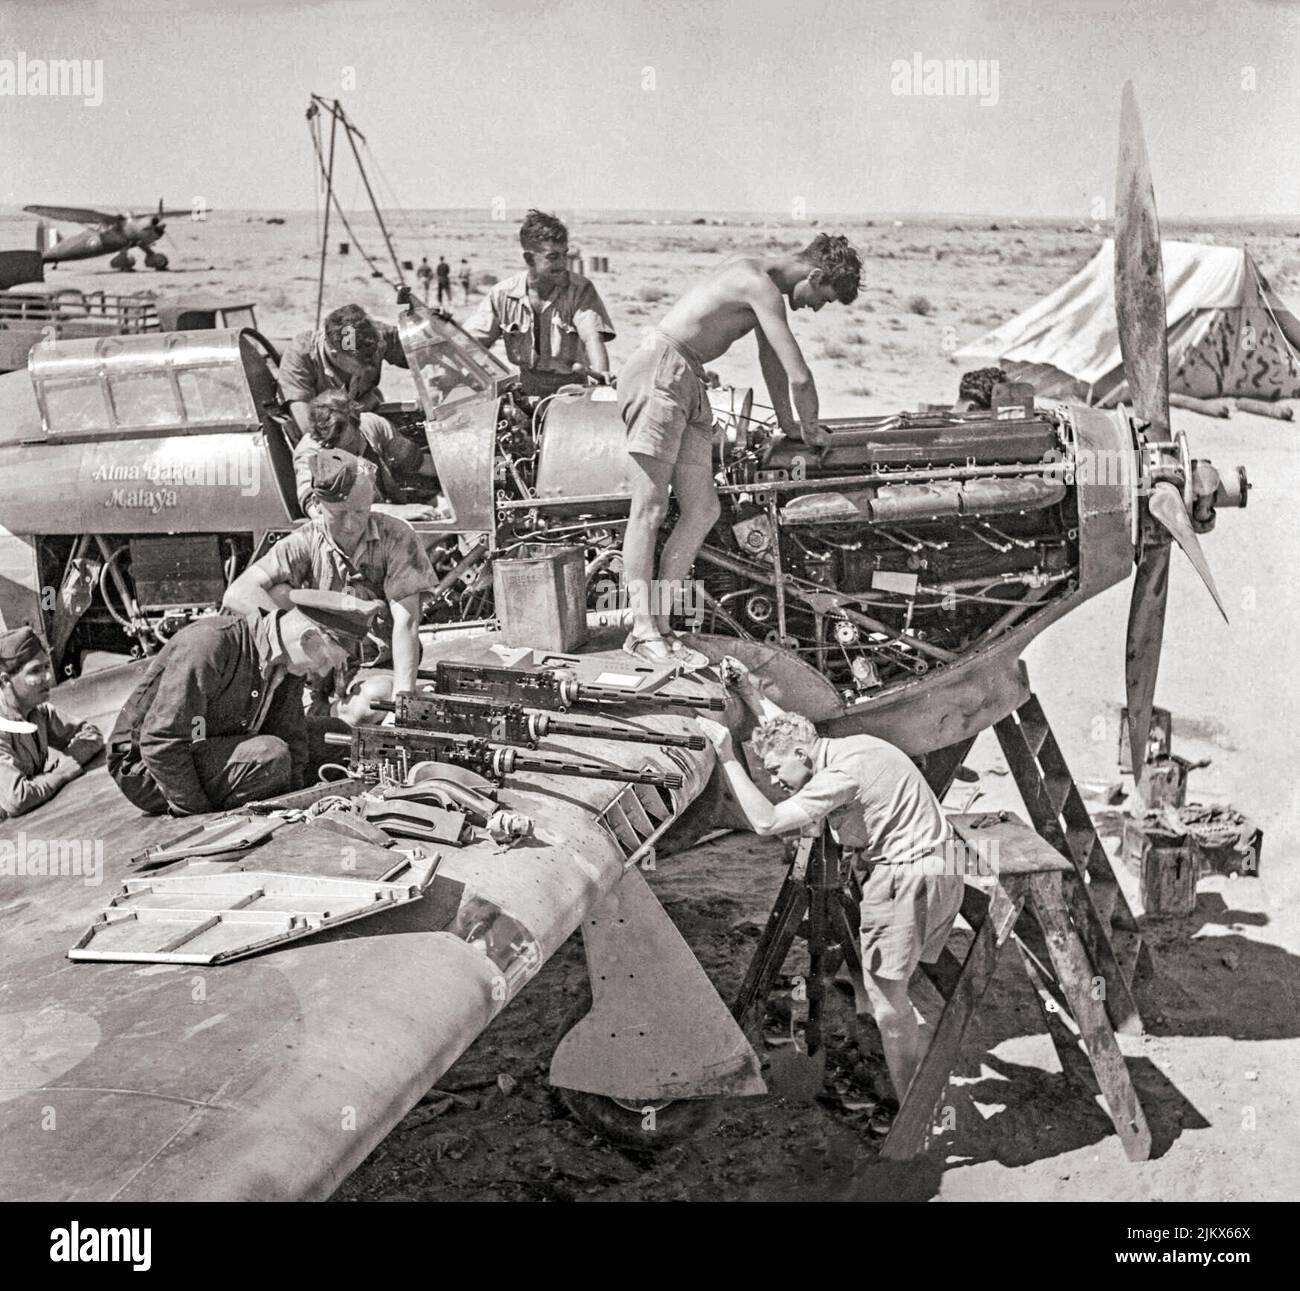 Groundcrew di No. 274 Squadron RAF revisionare un Hawker Hurricane Mark i in Libia, durante la difesa di Tobruk. L'aereo da caccia britannico a posto singolo ha combattuto in tutti i principali teatri della seconda guerra mondiale. Uno STOL di Westland Lysander può essere visto sullo sfondo Foto Stock